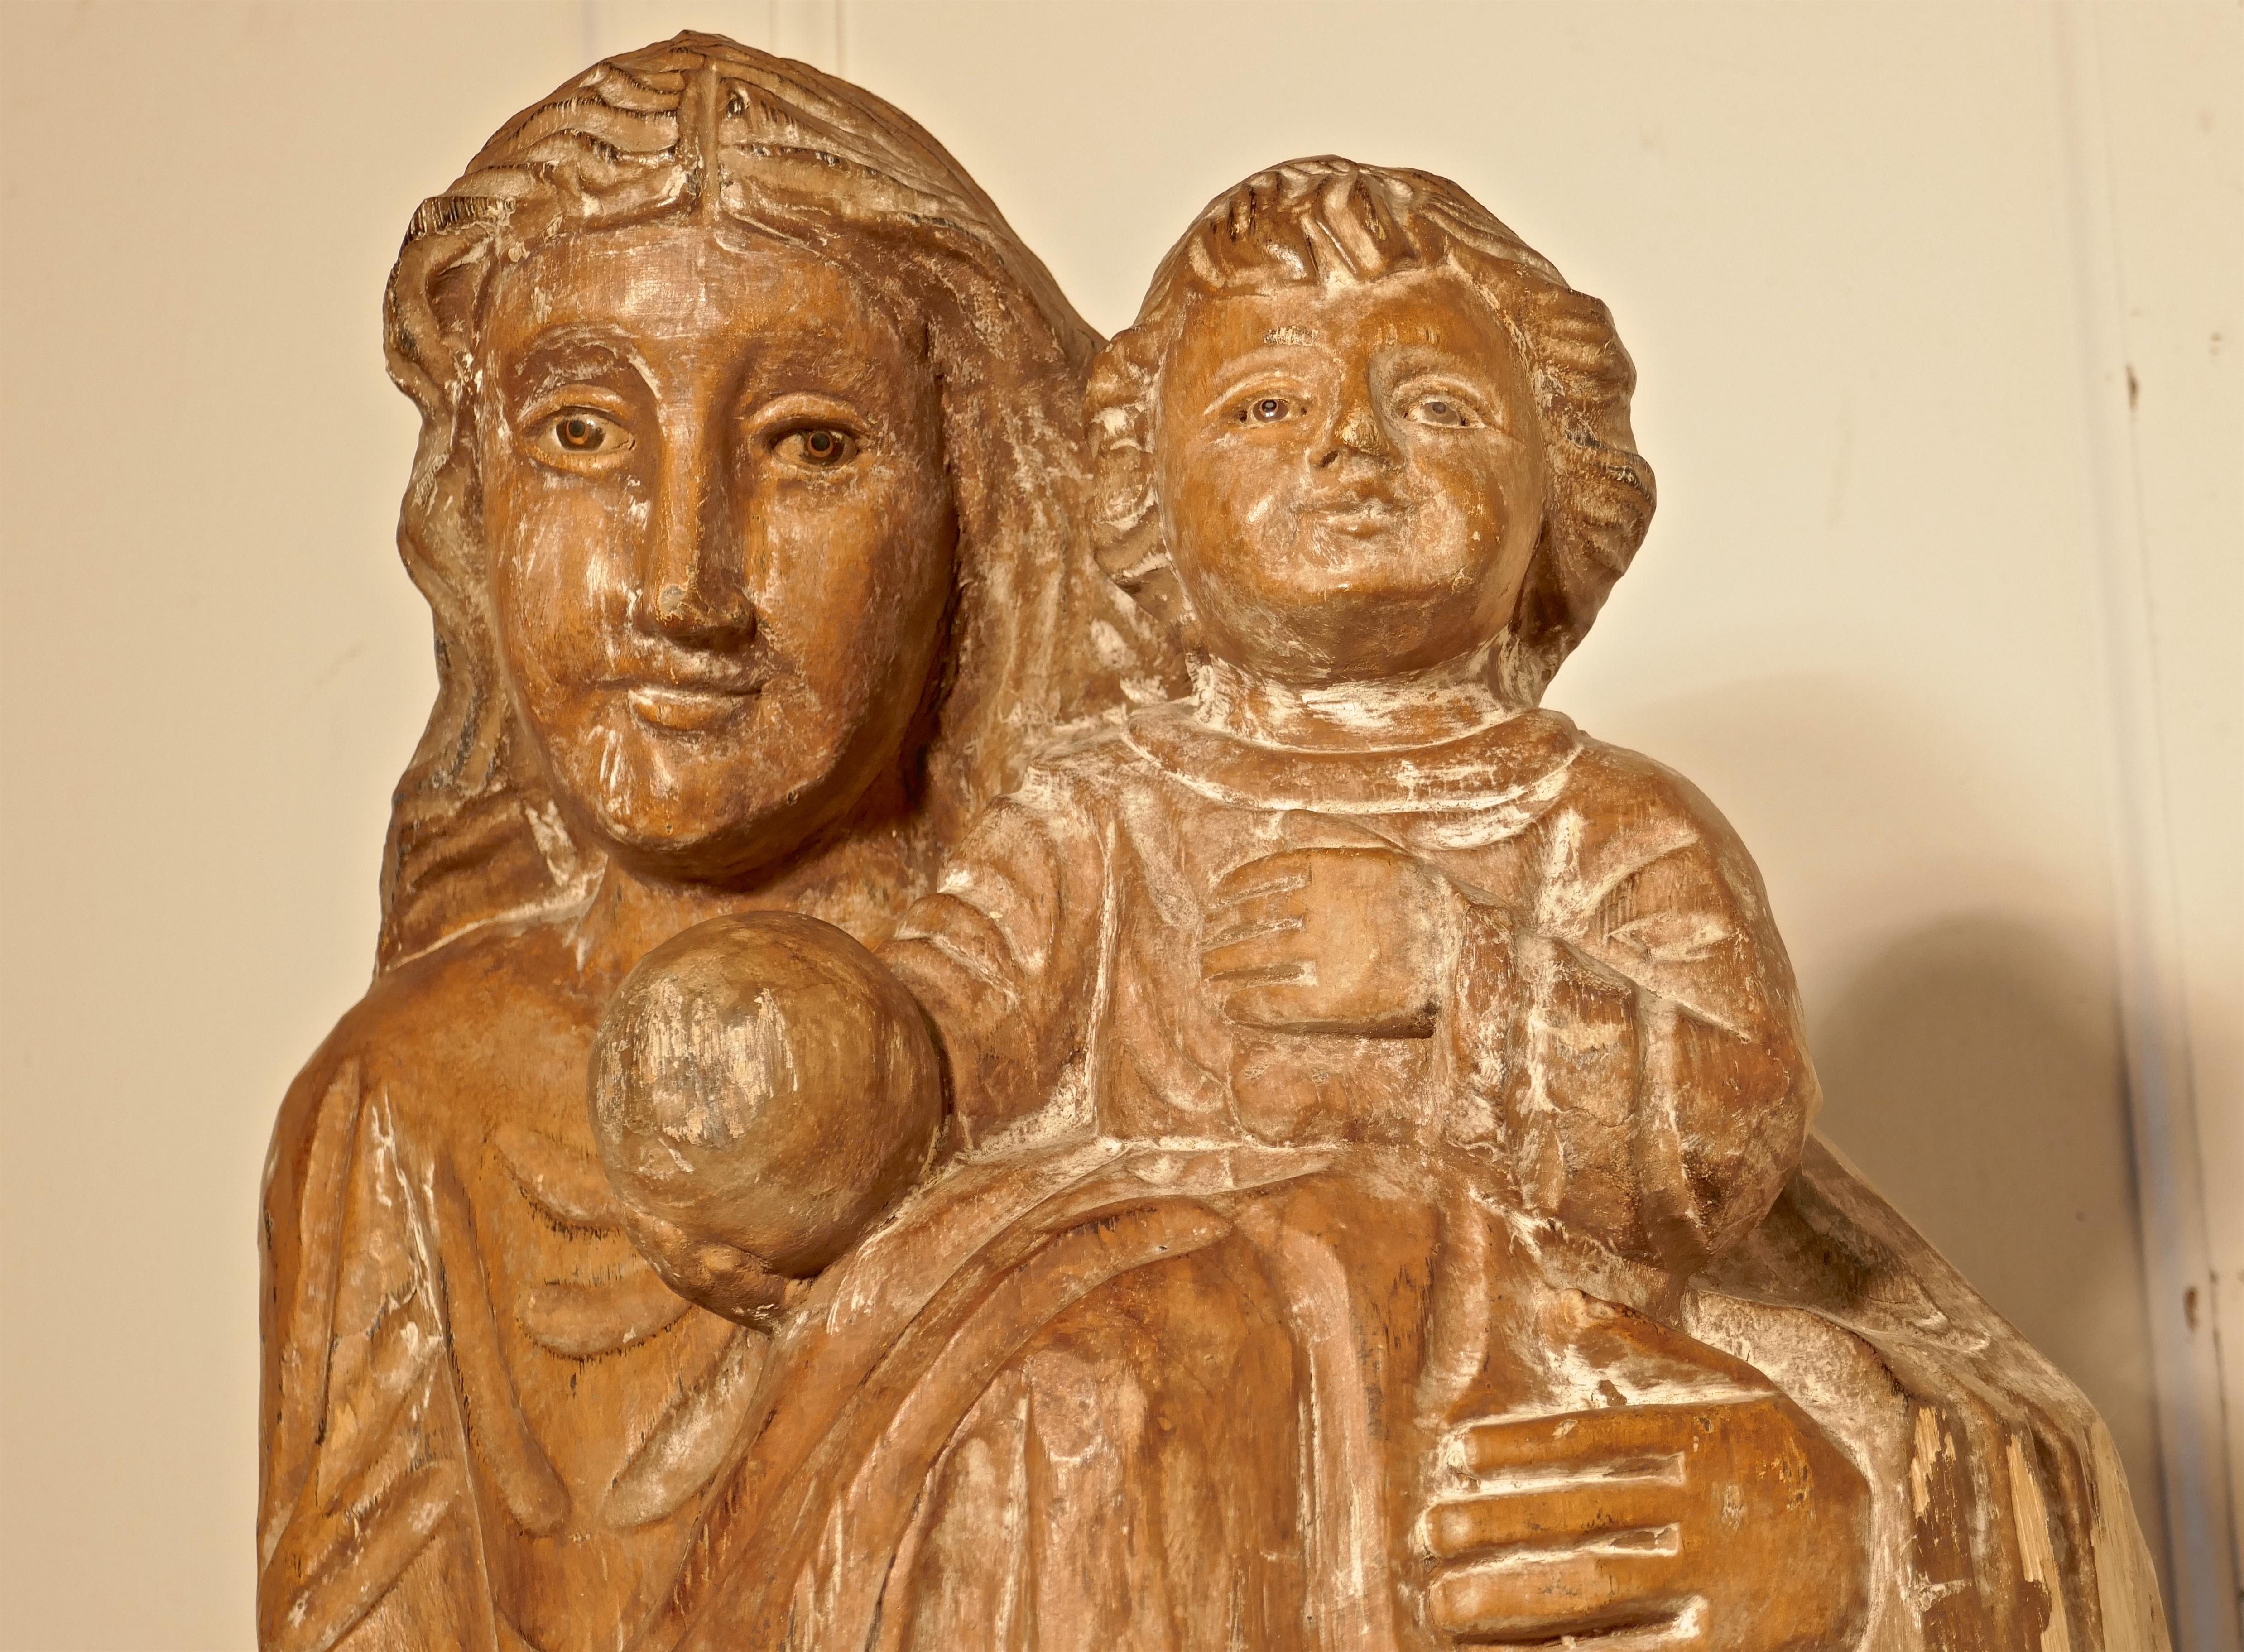 Französische geschnitzte Statue der Madonna mit Kind aus dem 18.

Dieses charmante Stück wurde aus einer Kirchenräumung in Südfrankreich gerettet.
Die Statue ist aus einem Stück Hartholz geschnitzt, sie zeigt die lächelnde Madonna, die das Kind